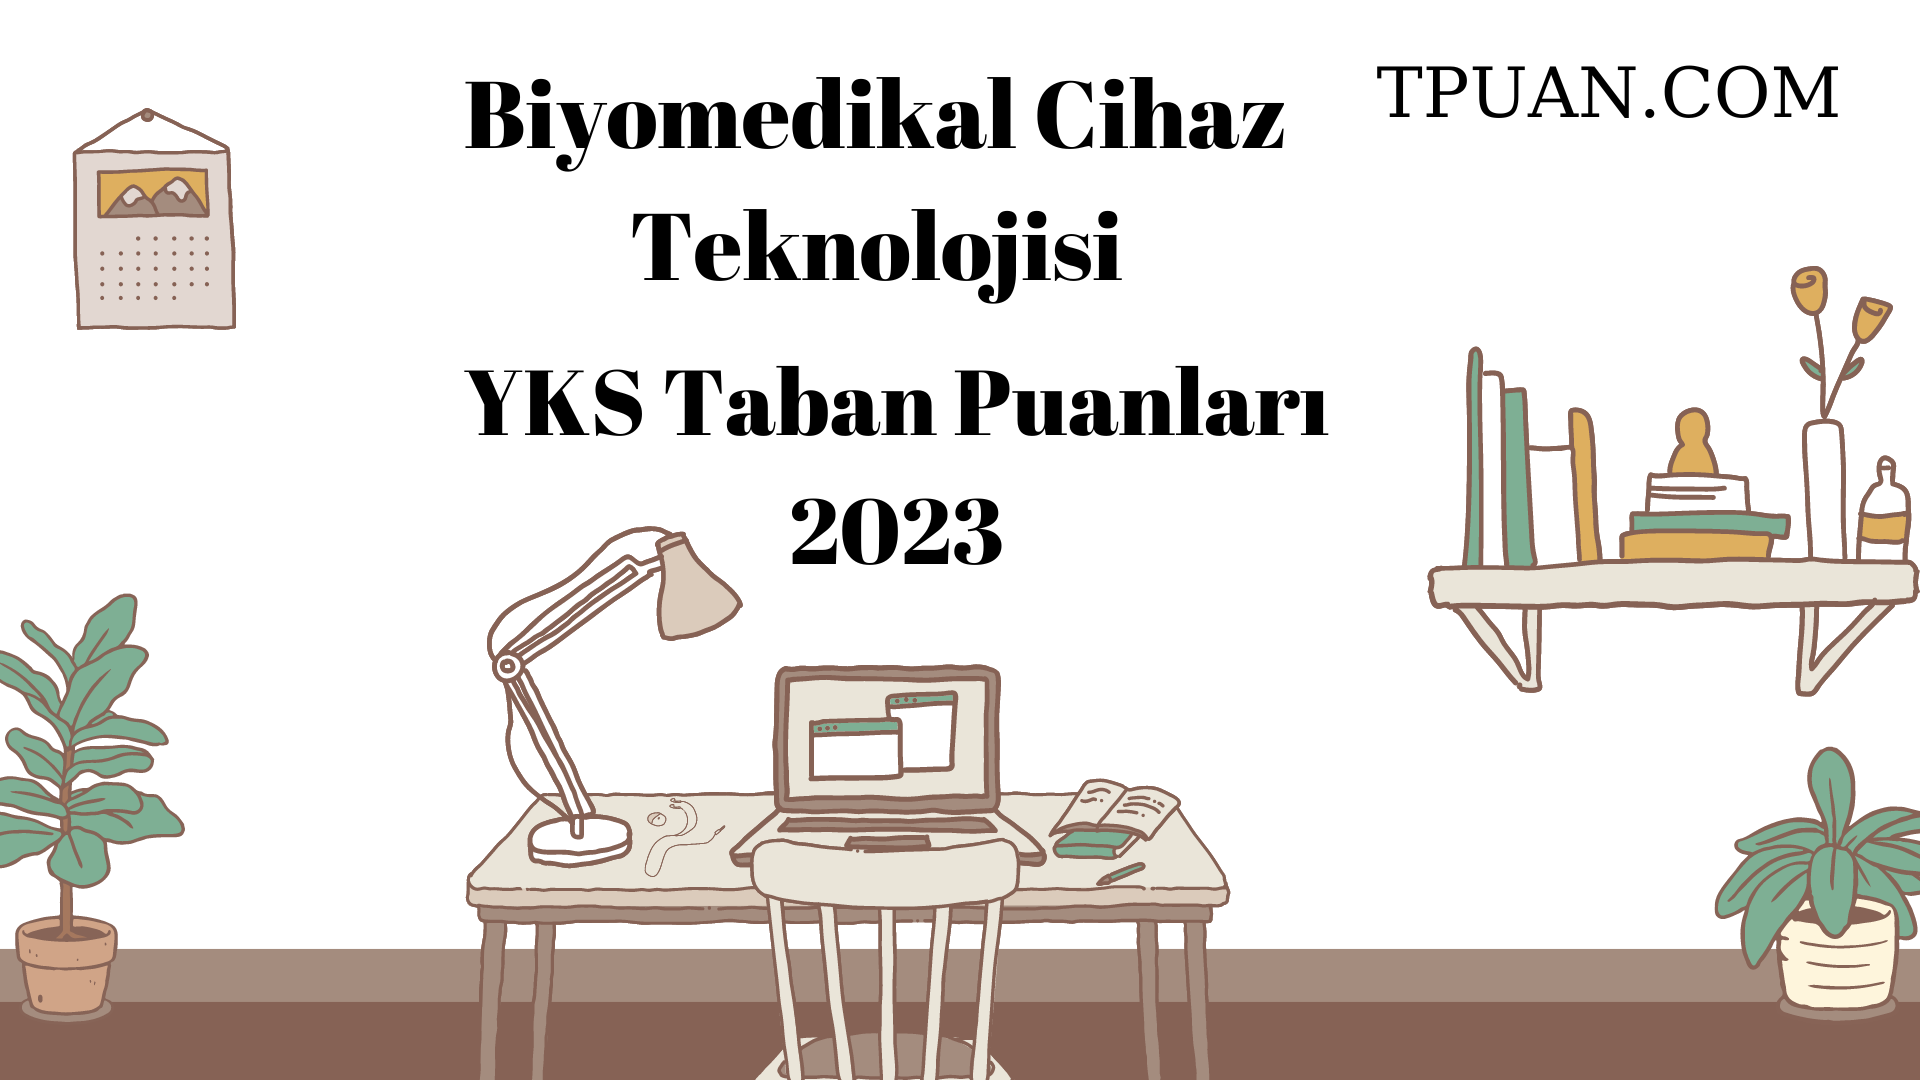  Biyomedikal Cihaz Teknolojisi YKS Taban Puanları 2023